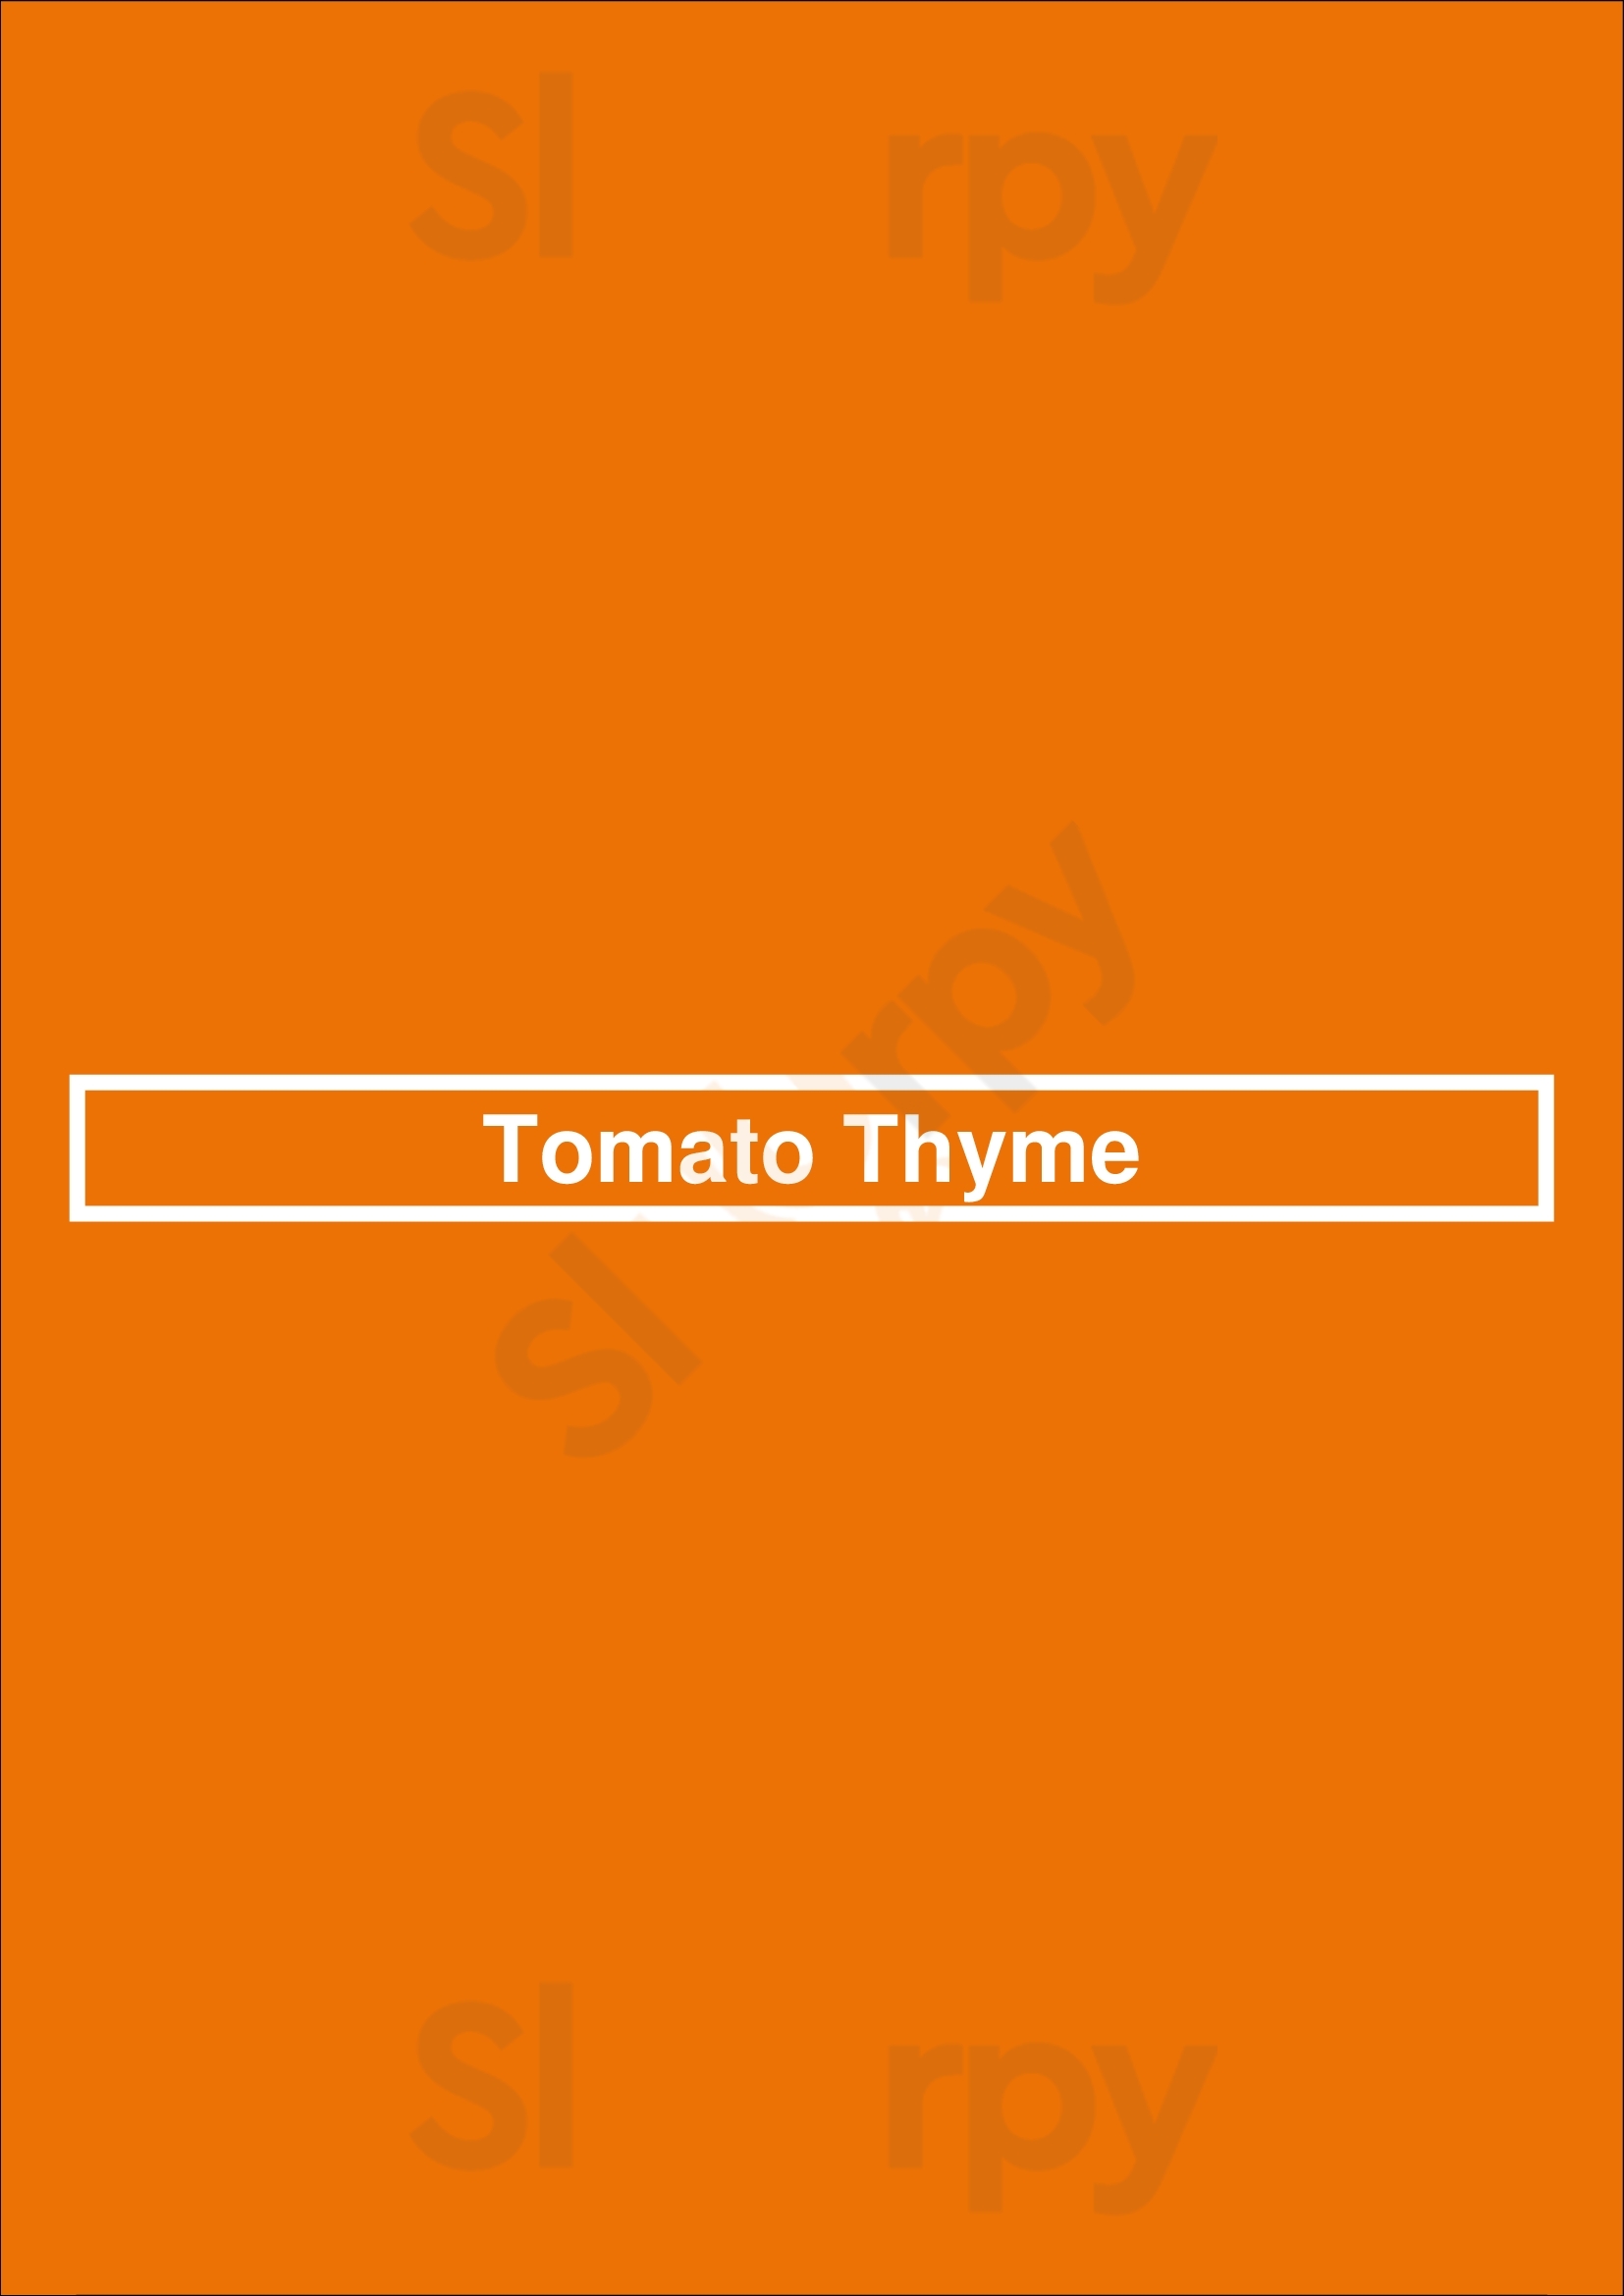 Tomato Thyme San Jose Menu - 1